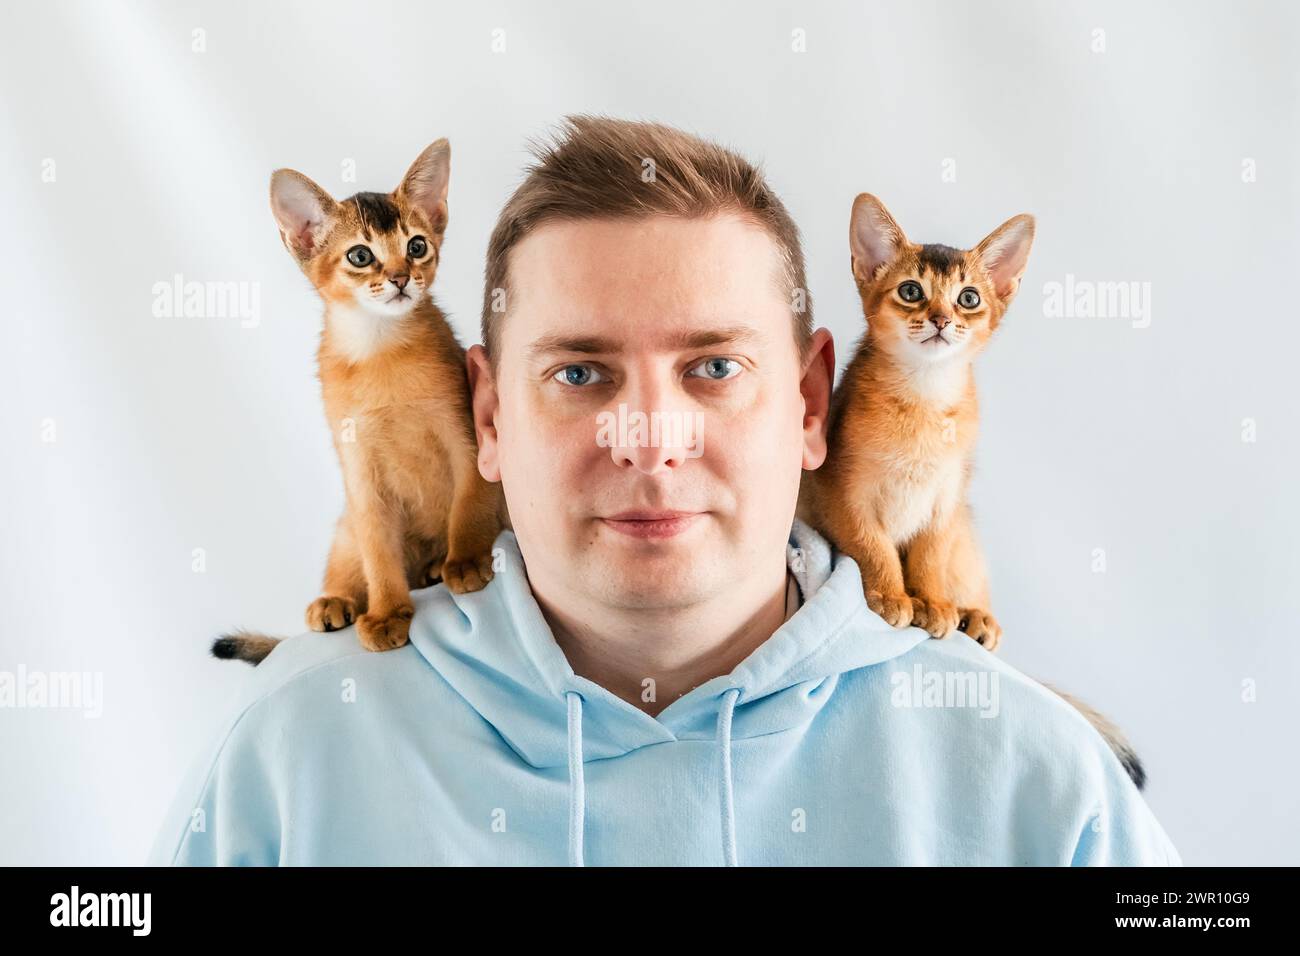 Uomo divertente sorridente con felpa blu con cappuccio e gemelli gatti abissini, piccoli gattini appena nati seduti sulle spalle. Sfondo bianco. Animali domestici felici, soffici domestici Foto Stock